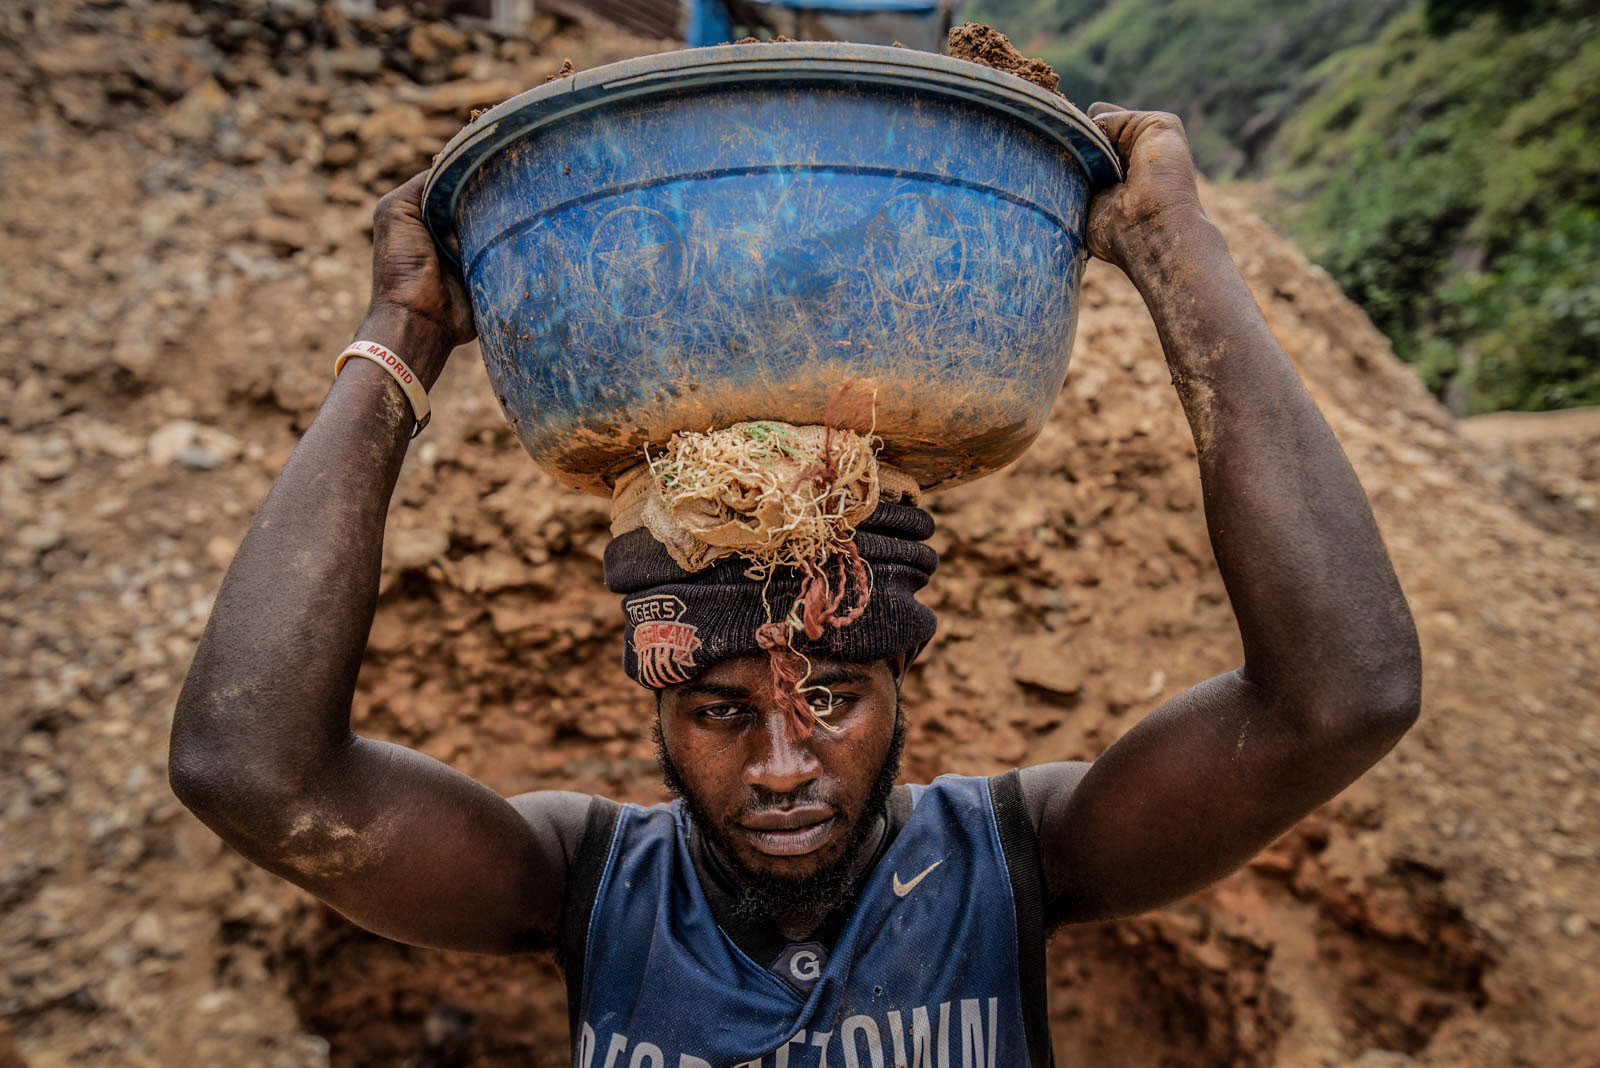 Province du Sud-Kivu, mars 2021. Des artisans orpailleurs cherchent l’or à la batée à Kamituga. © Moses Sawasawa pour la Fondation Carmignac